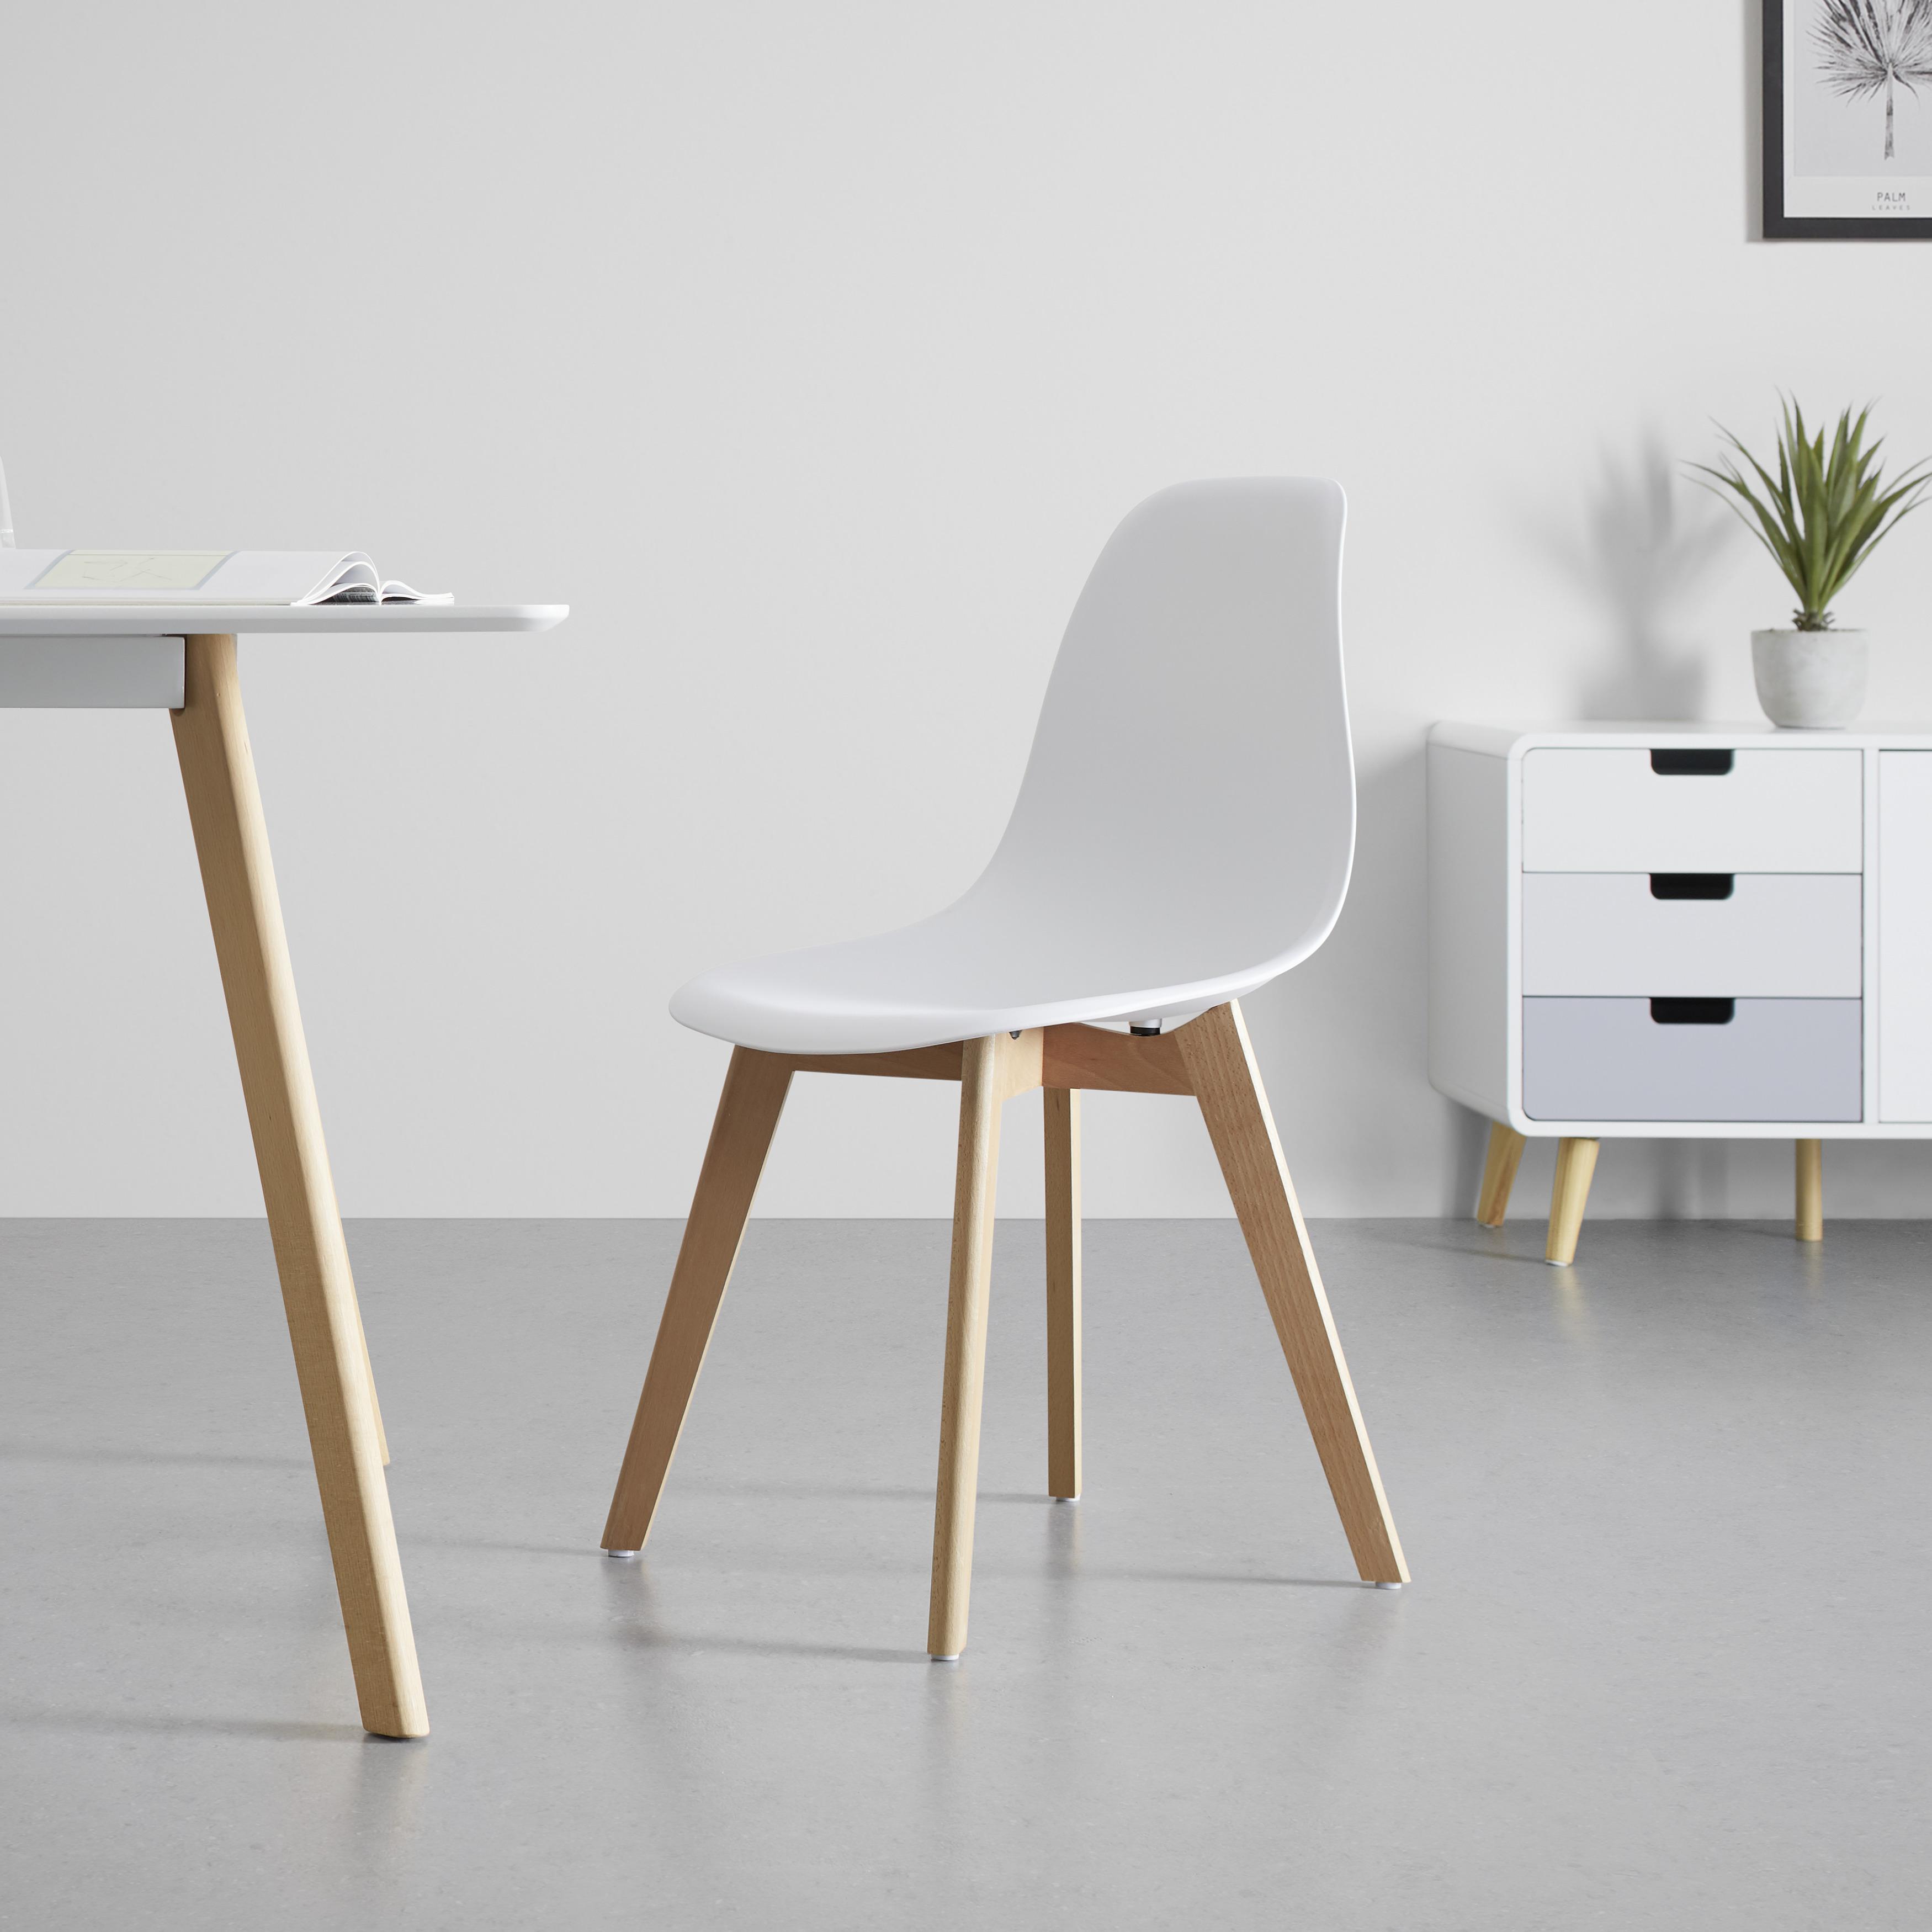 Jídelní Židle Frieda - bílá/barvy buku, Moderní, dřevo/plast (54/87,50/46cm) - Modern Living